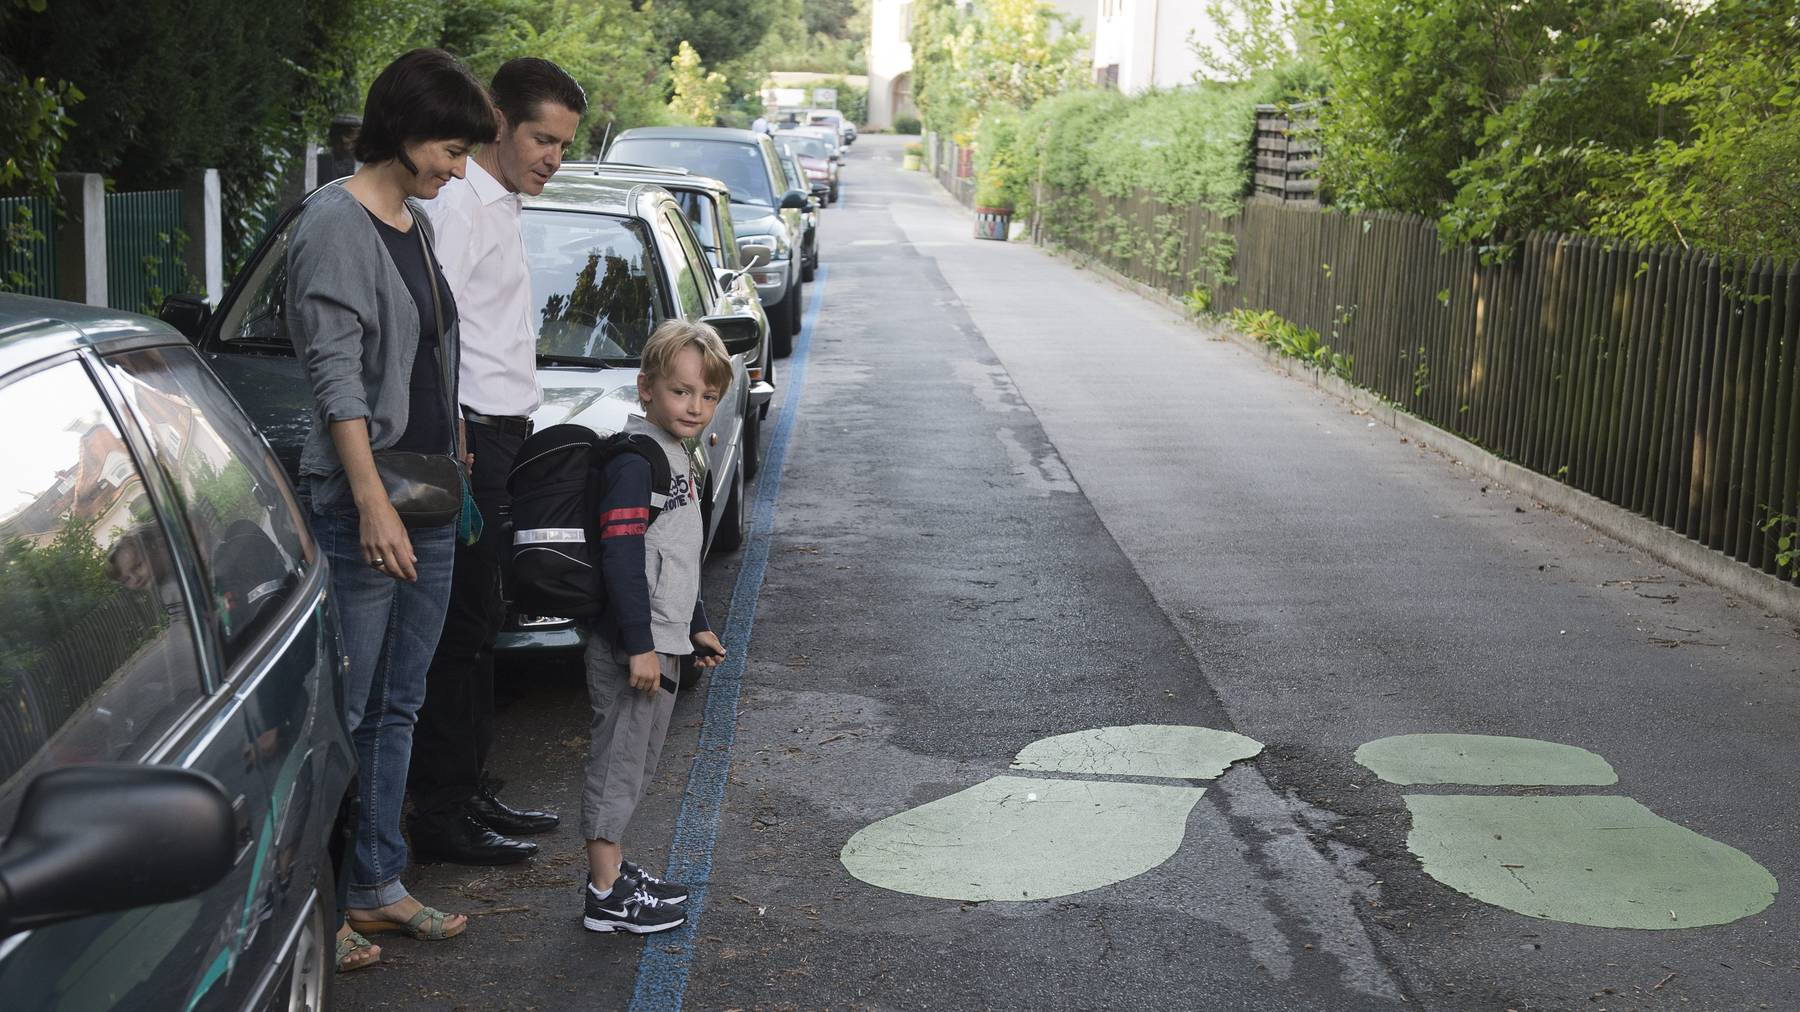 Kinder ahmen nach, deshalb ist es wichtig, dass sich Erwachsene, besonders Eltern, im Verkehr richtig verhalten.